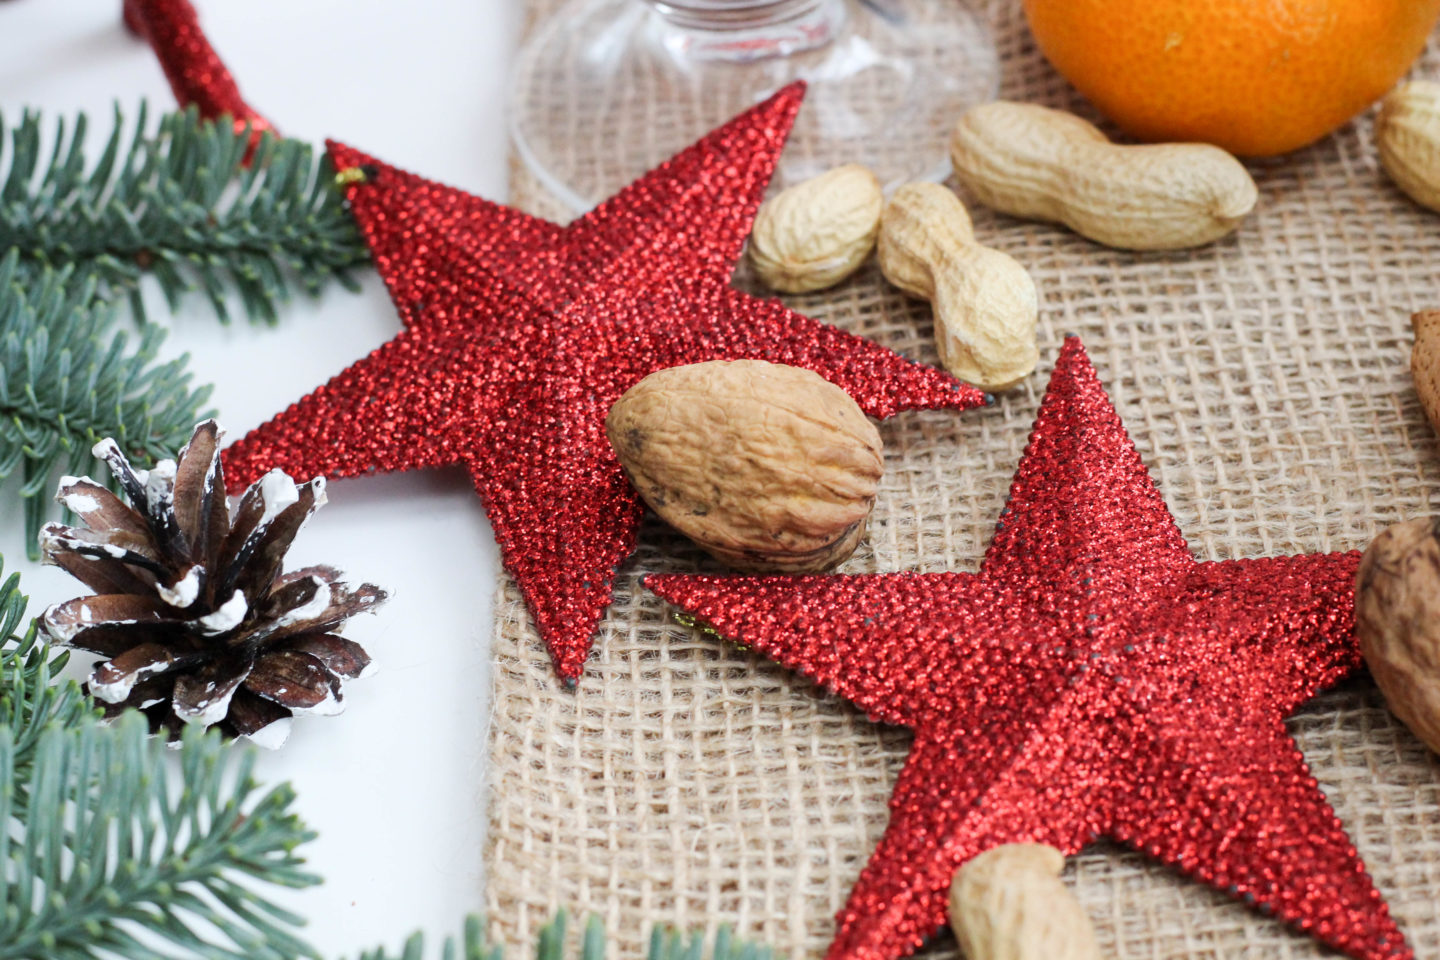 vegan-nikolaus-krampus-weihnachten-bratapfel-germteig-perchten-nuesse-christmas-soulfood-homespa-plantbased-25-von-35